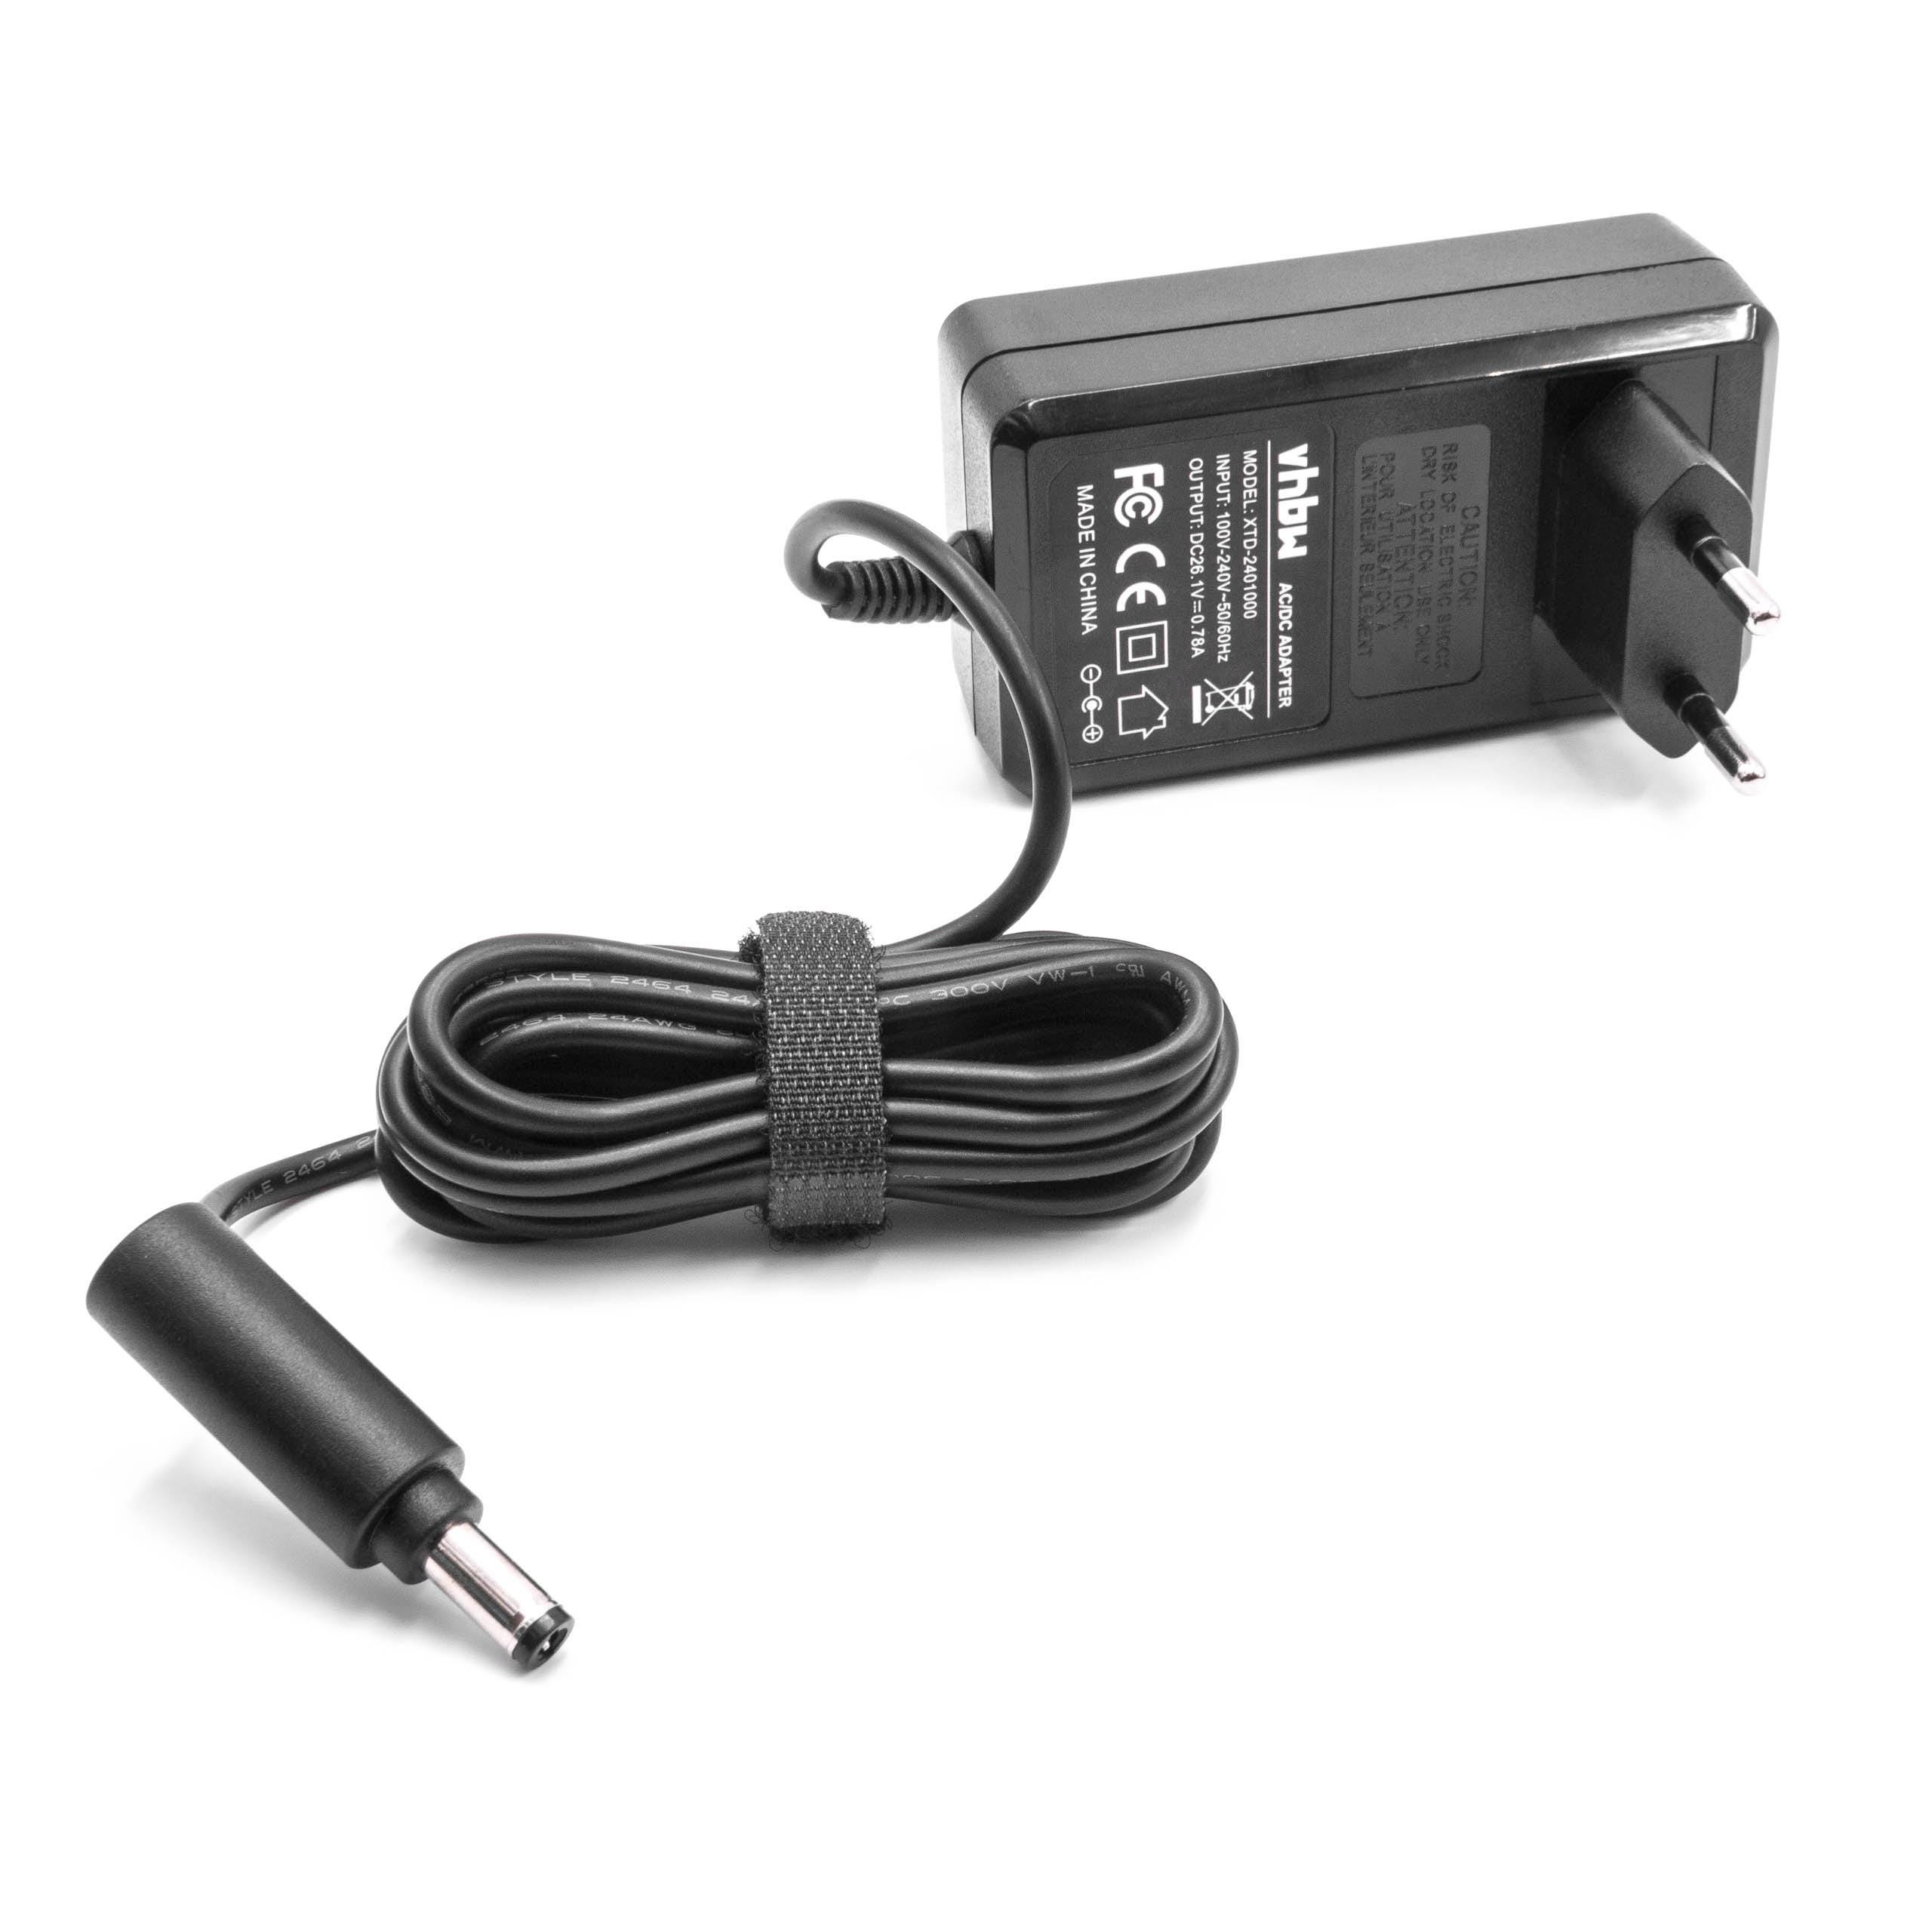 Vhbw Chargeur pour aspirateur compatible avec Dyson DC58, DC59, DC60, DC61,  DC62, DC72, SV03, SV04, SV05, SV06 aspirateur à main - 165cm